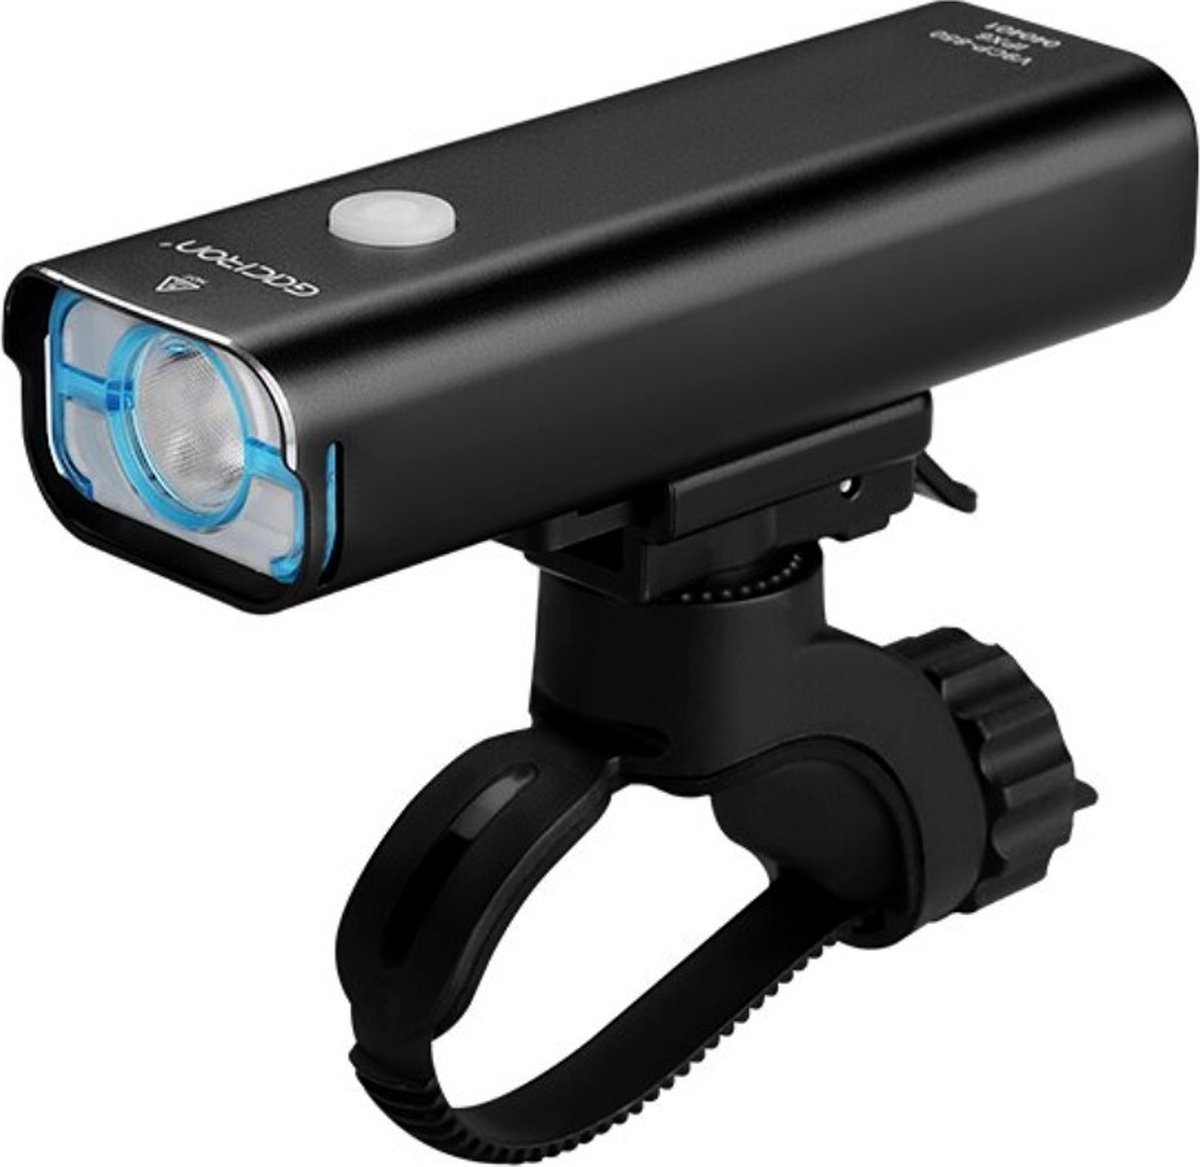 Gaciron voorlicht | V9CP-850 - Fiets Koplamp 850 lumen - LED - USB oplaadbaar Type C - IPX6 waterdicht